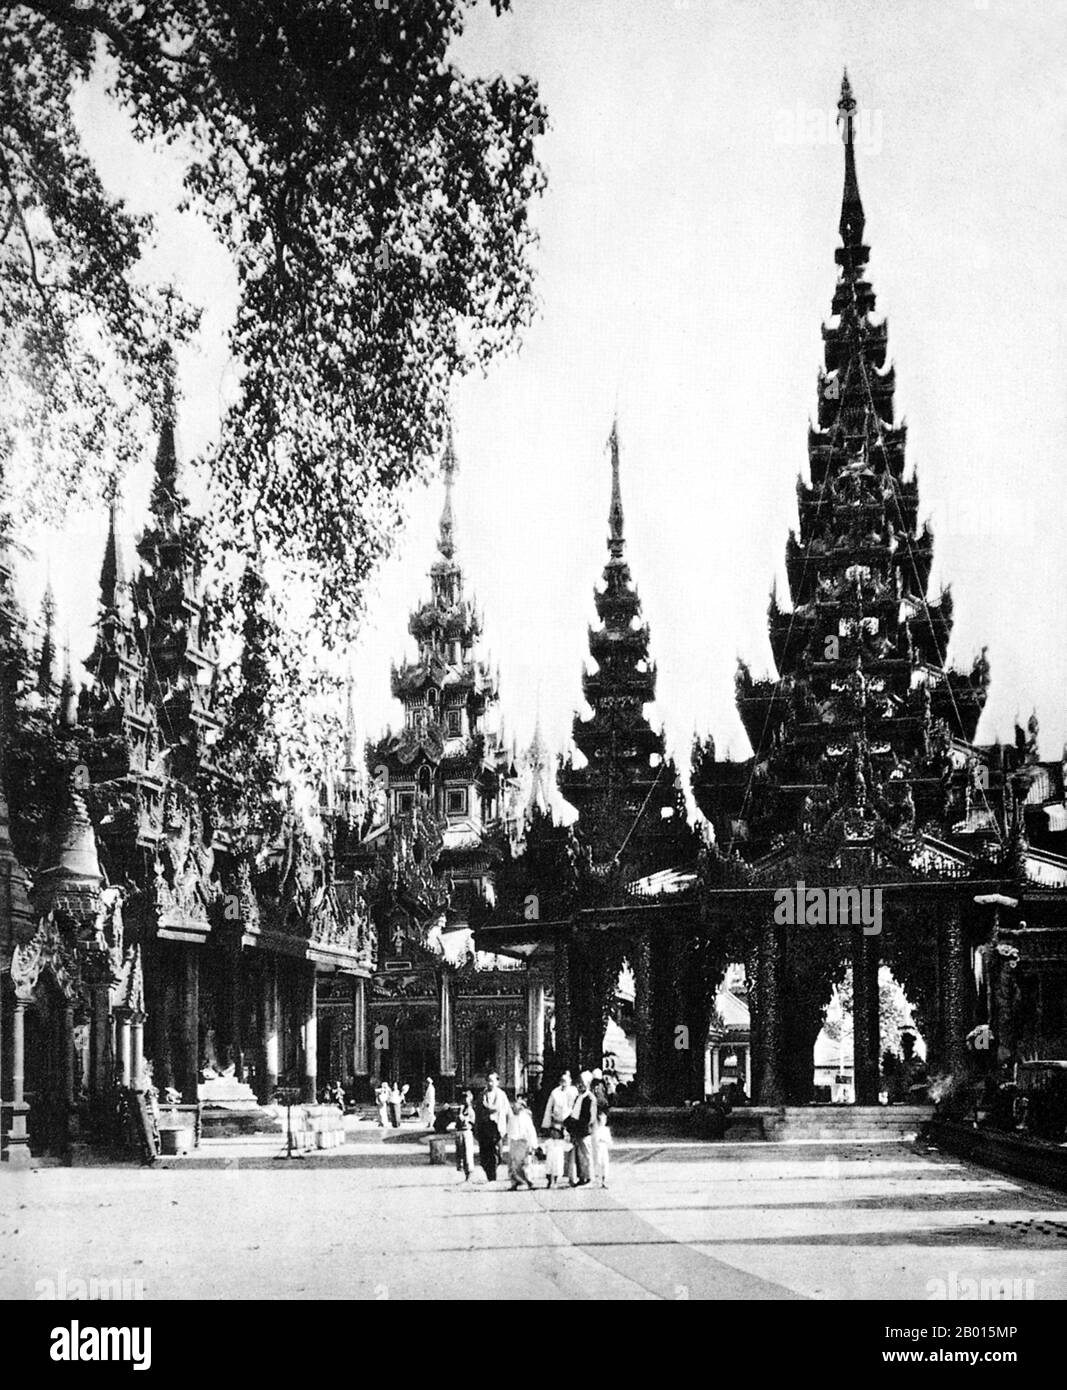 Burma/Myanmar: Chedis im Inneren des Geländes der Shwedagon Pagode, Rangun, c. 1920er Jahre. Die 98 m (322 ft) lange vergoldete Stupa der Shwedagon-Pagode dominiert die Skyline von Rangun von ihrem Aussichtspunkt auf dem Singuttara-Hügel im Zentrum der Stadt und ist Burmas bekanntestes Wahrzeichen und Buddhistisches Denkmal. Obwohl die Legende besagt, dass die Pagode zur Zeit von Siddharta Gautama, dem Buddha, vor etwa 2,500 Jahren gebaut wurde, schreiben Archäologen den Bau des Tempels den Mon-Leuten irgendwann zwischen dem 6. Und 10. Jahrhundert u.Z. zu. Sie wird oft als die „Goldene Pagode“ bezeichnet. Stockfoto